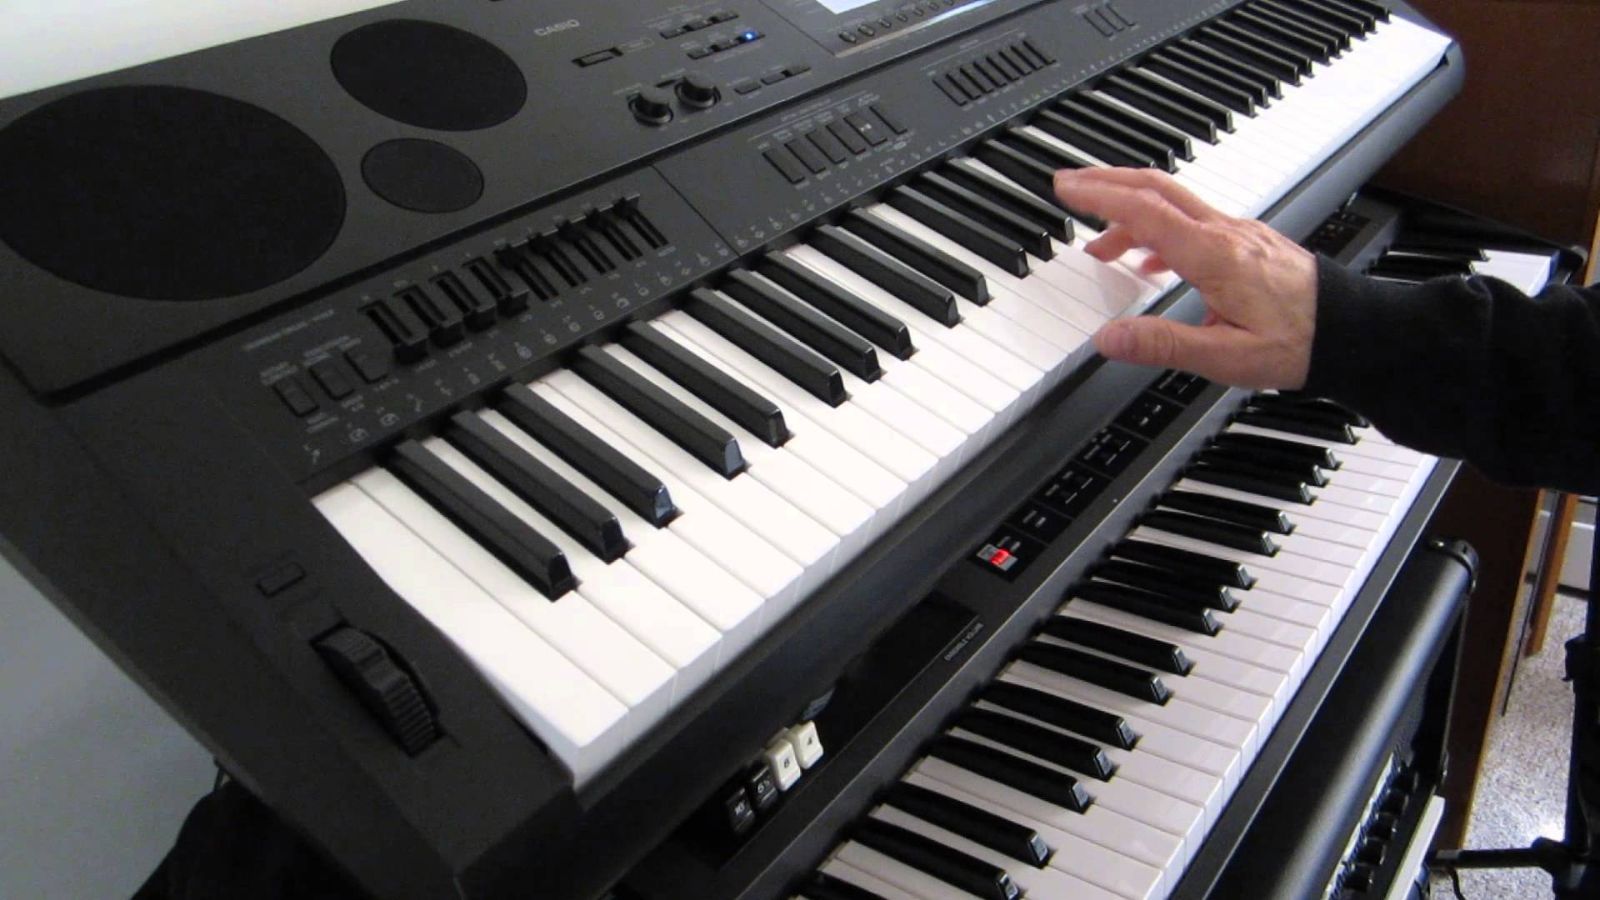 Đặc điểm phân biệt giữa chơi organ, chơi piano, và sự liên quan trong cách chơi của hai nhạc cụ này